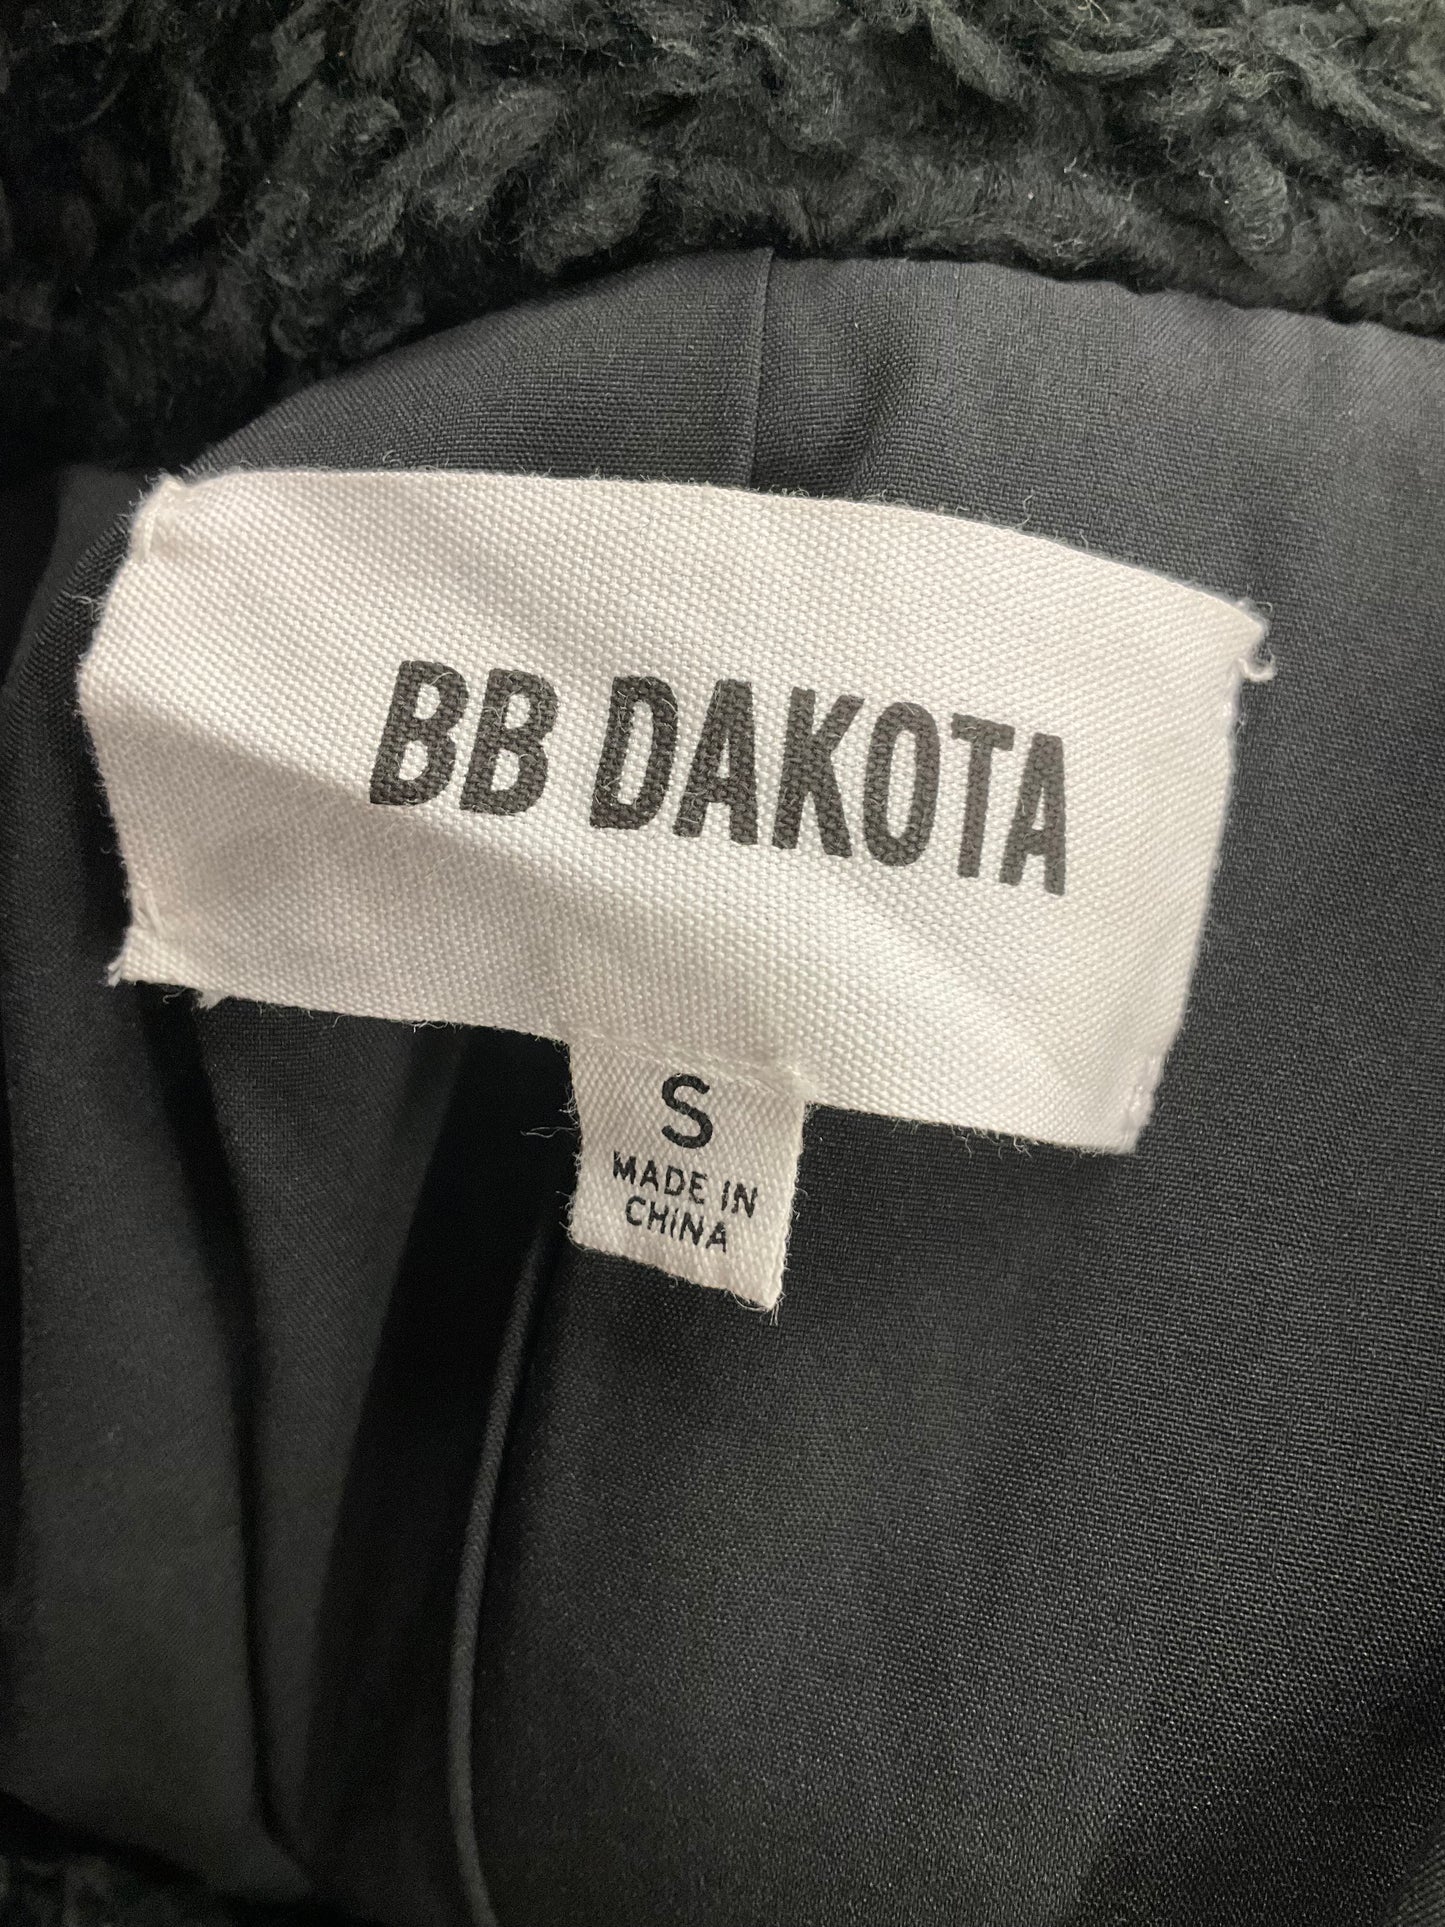 Vest Other By Bb Dakota  Size: S